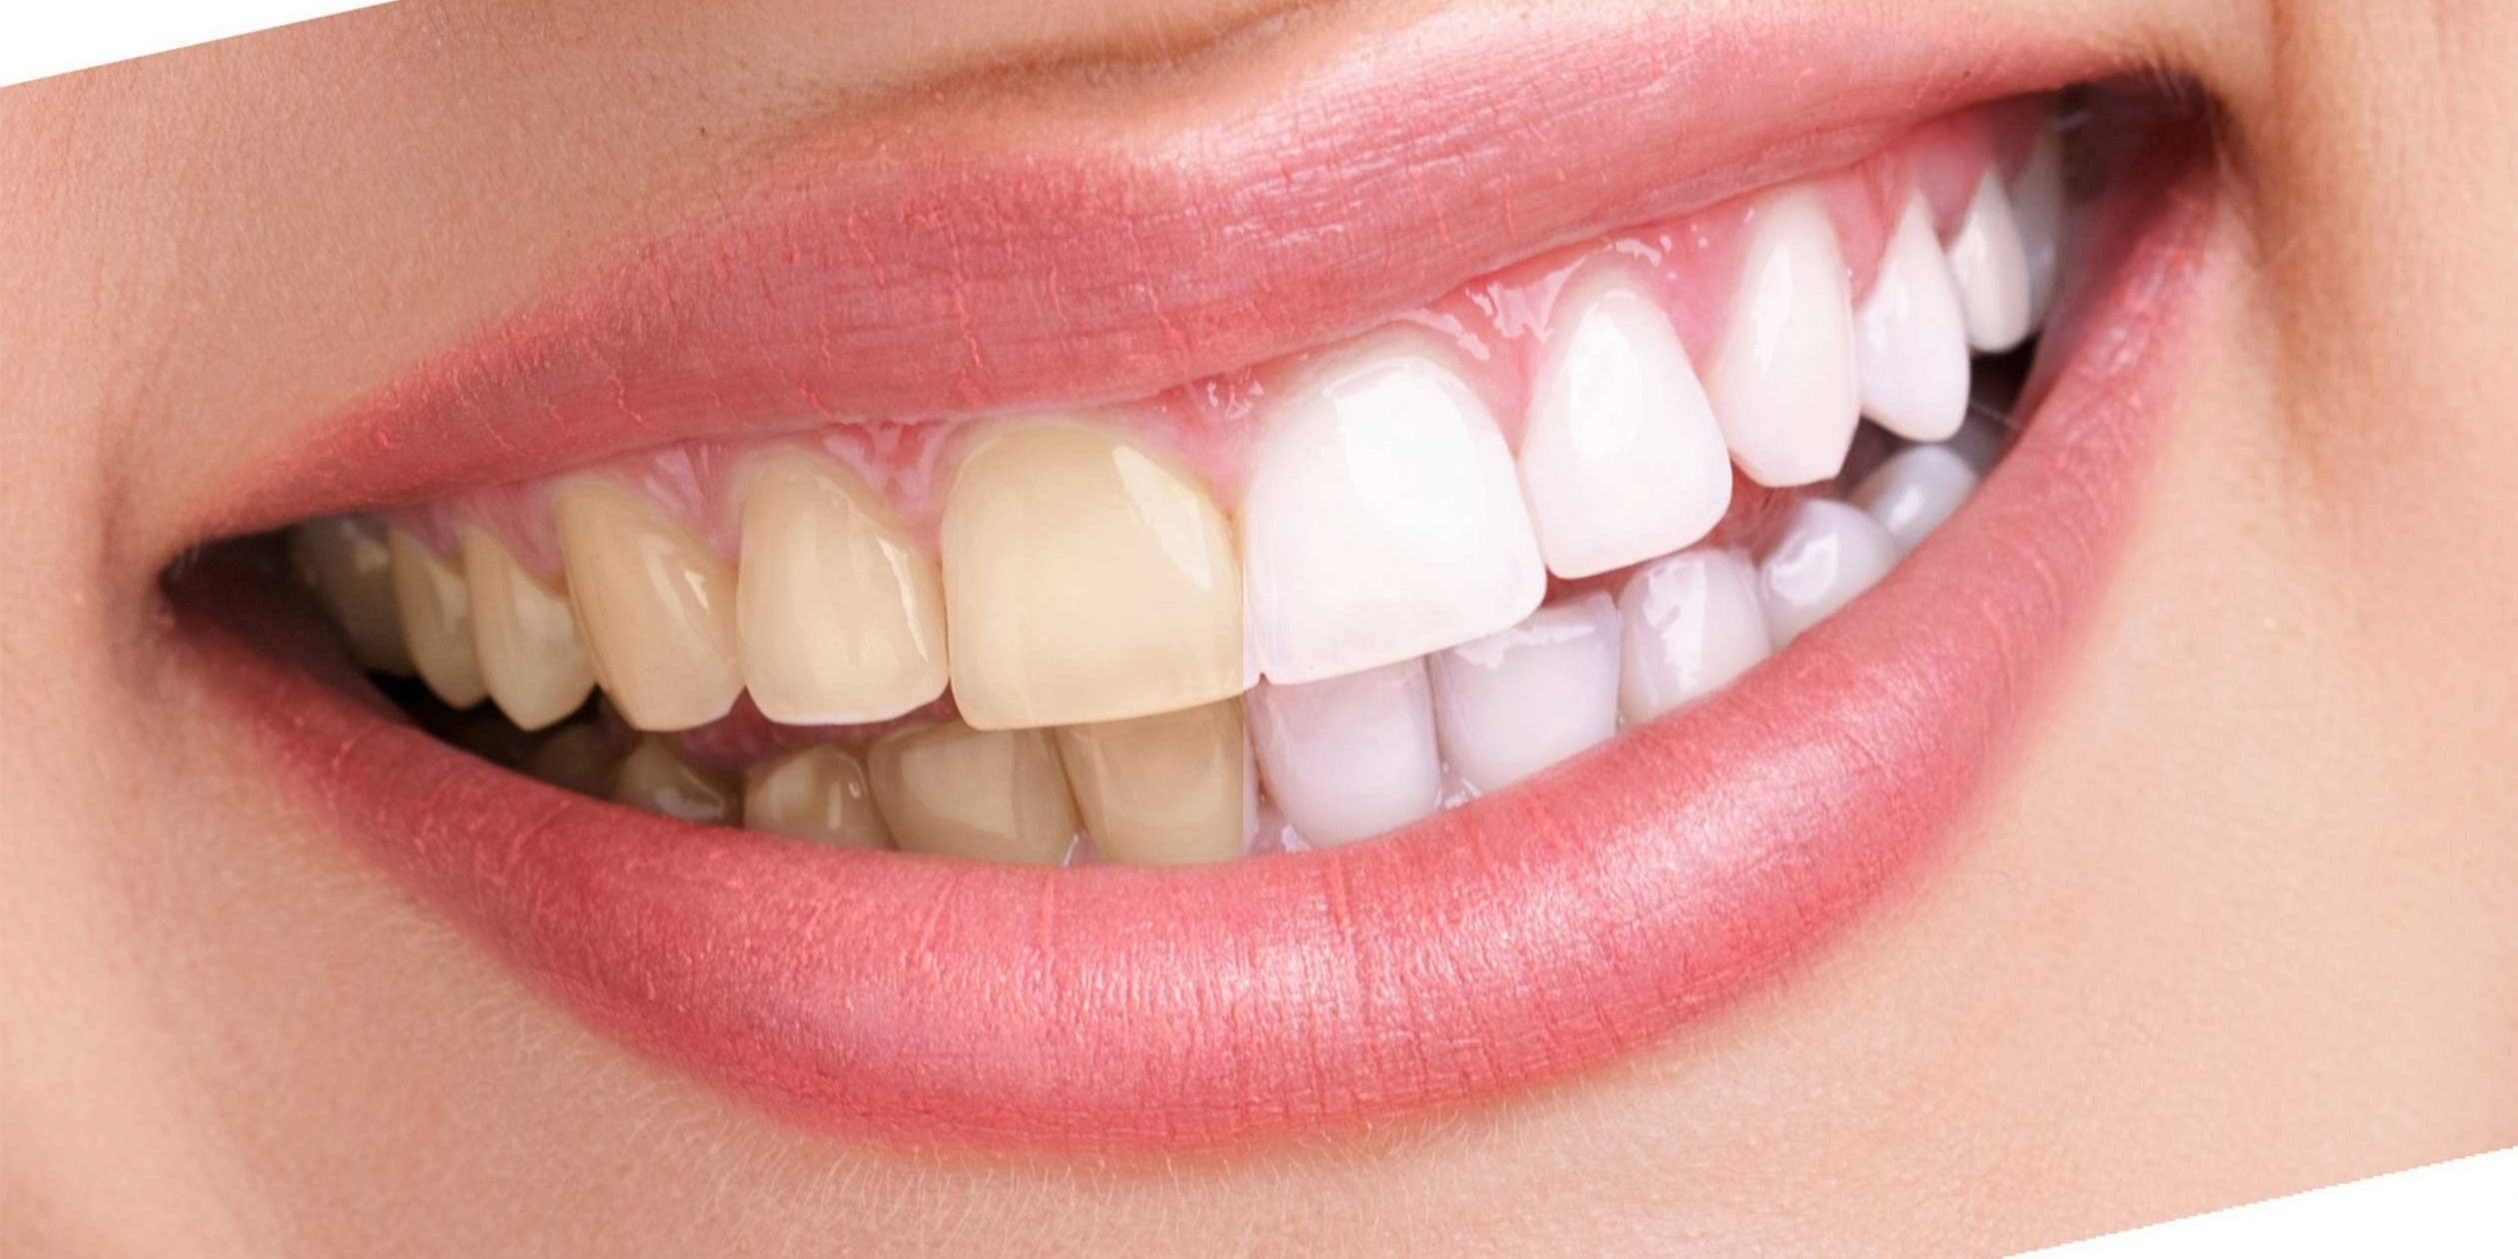 دندان زرد - سفيد كردن دندان با جوش شيرين